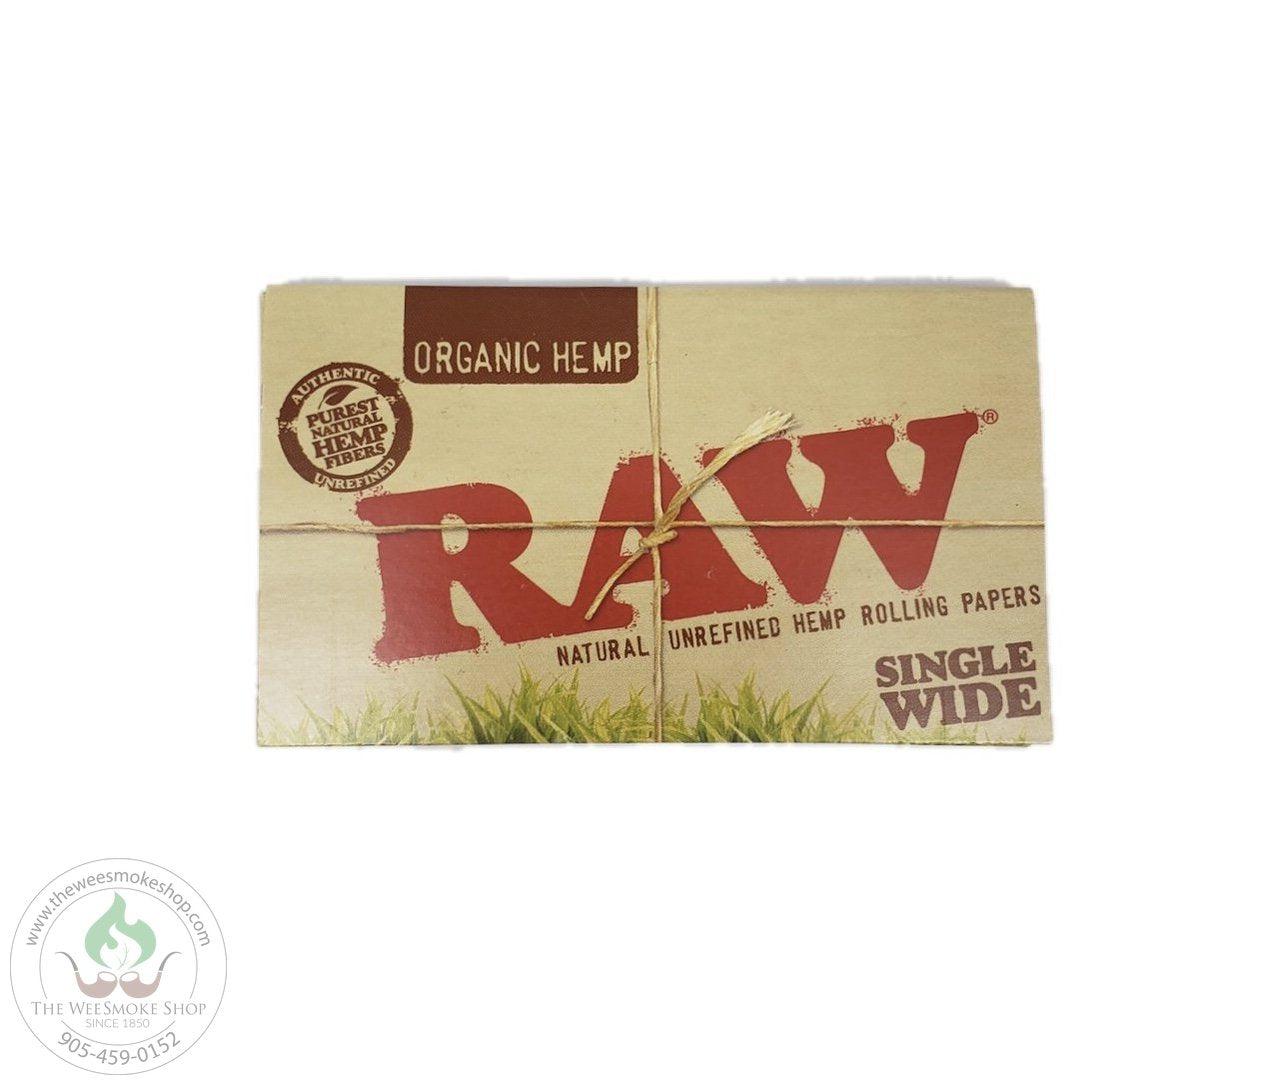 RAW Organic Hemp Rolling Papers. Single wide Double Window.